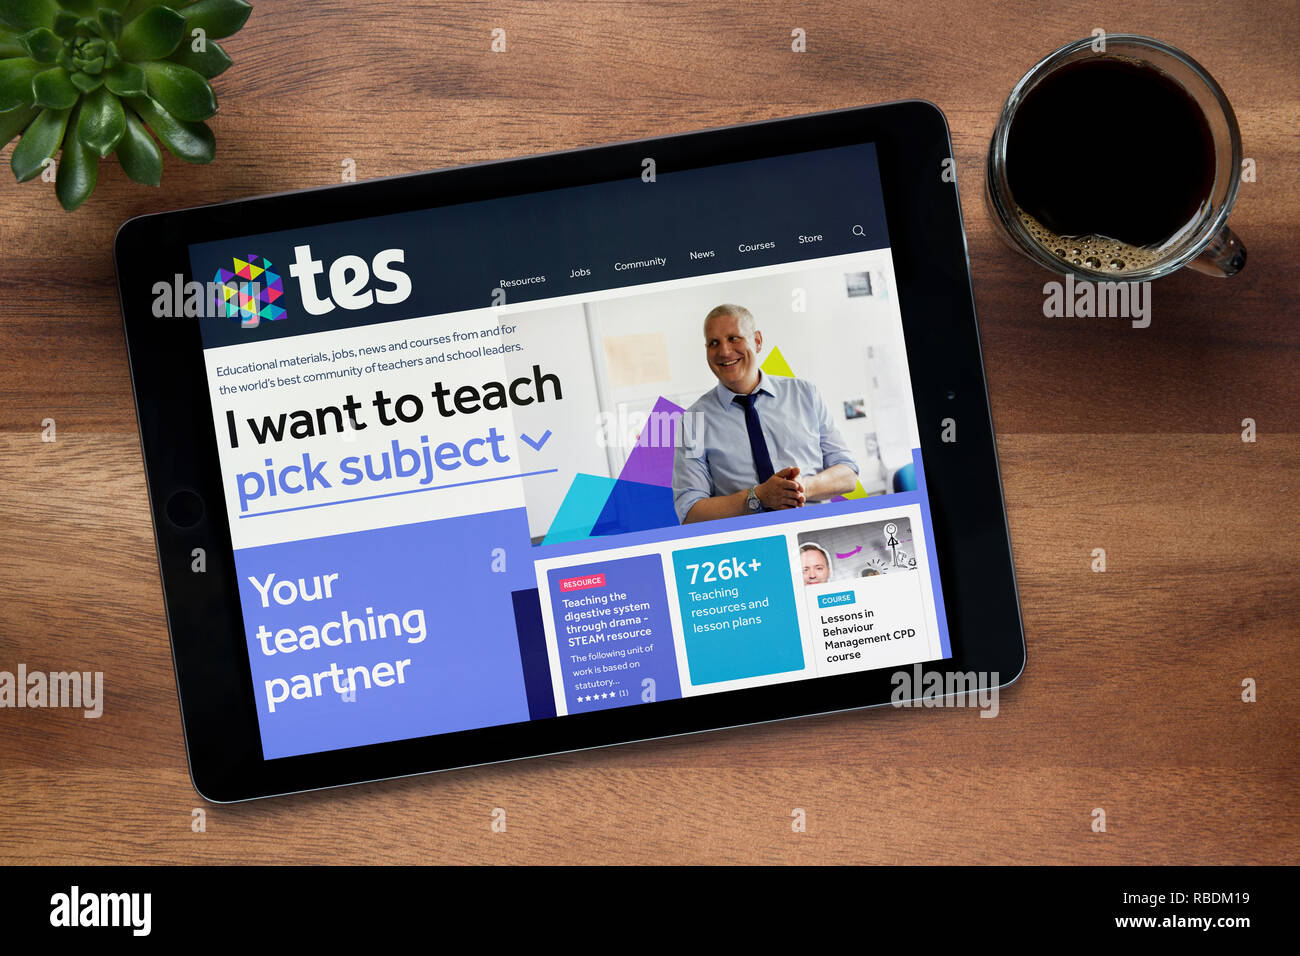 Le site web de la Tes (anciennement le Times Educational Supplement) est vu sur un iPad tablet, reposant sur une table en bois (usage éditorial uniquement). Banque D'Images